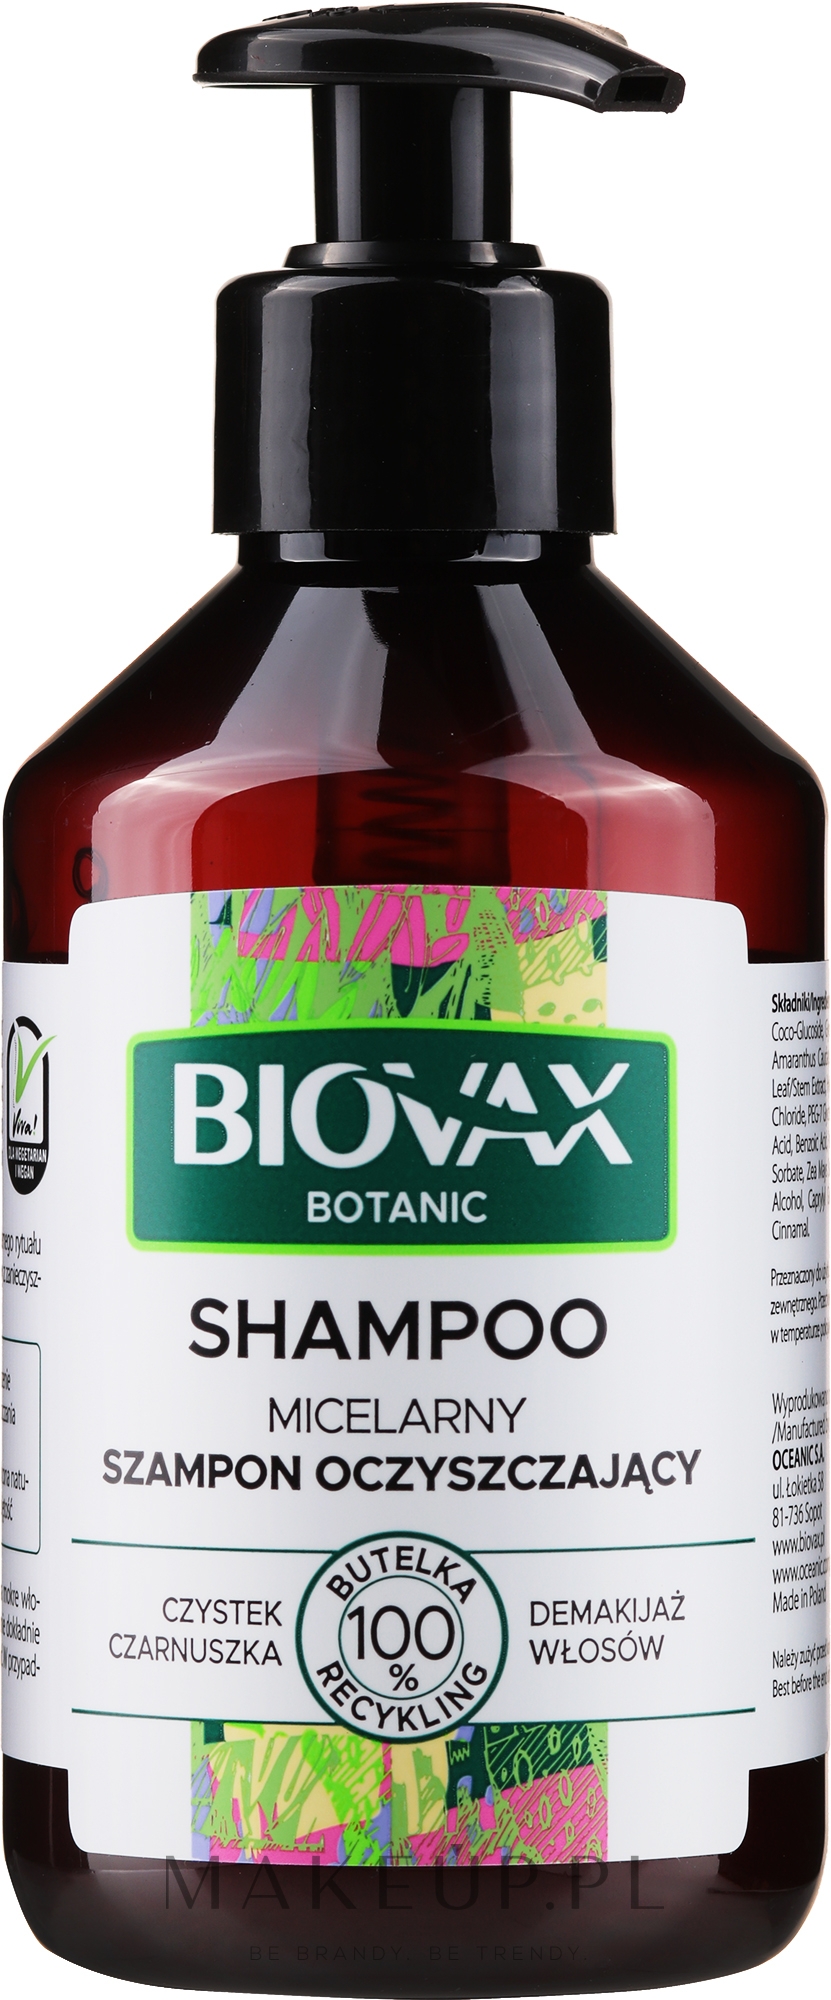 lbiotica biovax botanic micelarny szampon oczyszczający 200ml